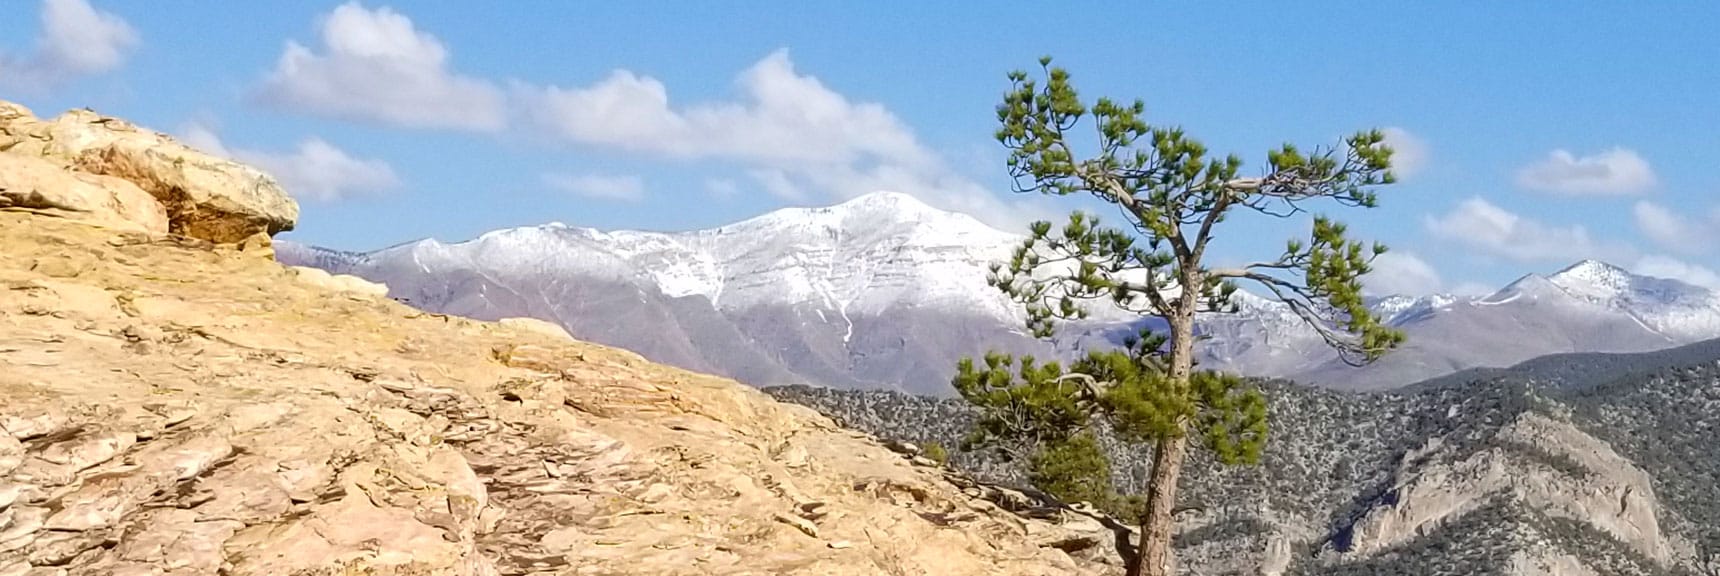 Griffith Peak in Mt Charleston Wilderness Viewed from Piedmont Ridge, Red Rock Park, Nevada